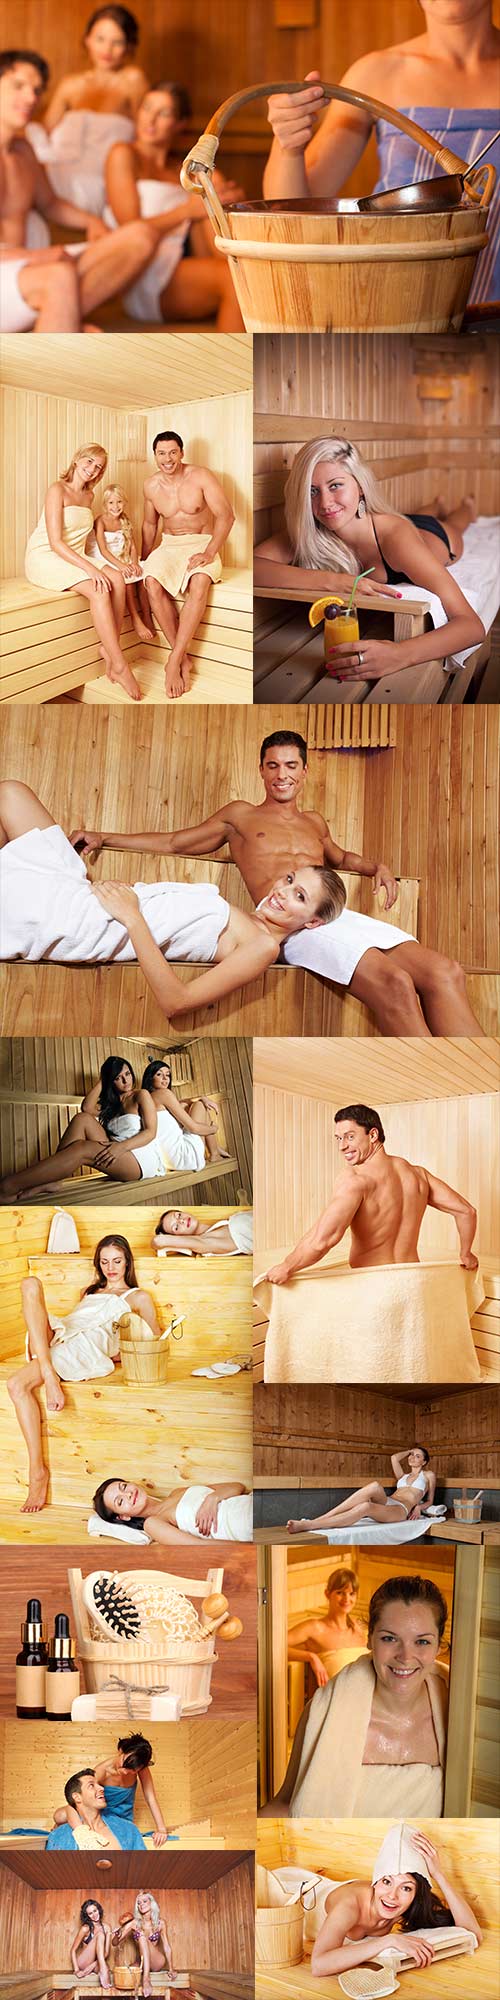 Sauna raster graphics